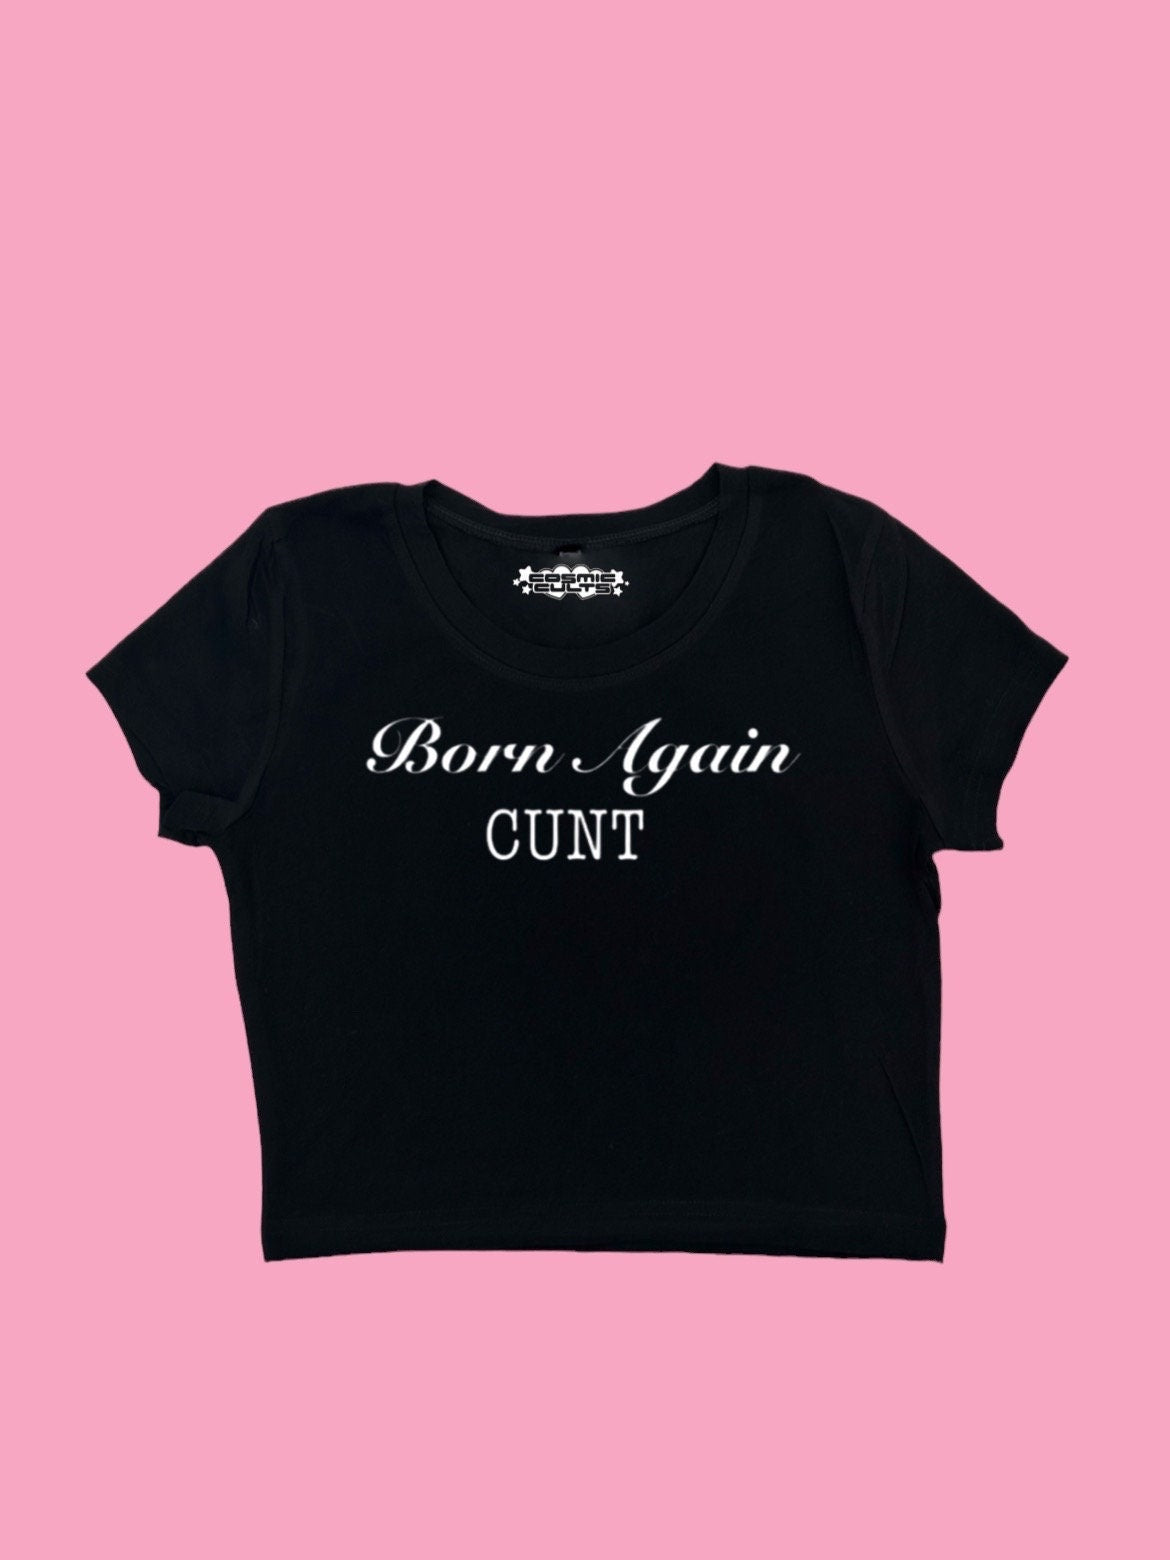 Born Again Cunt Y2K crop top tee shirt